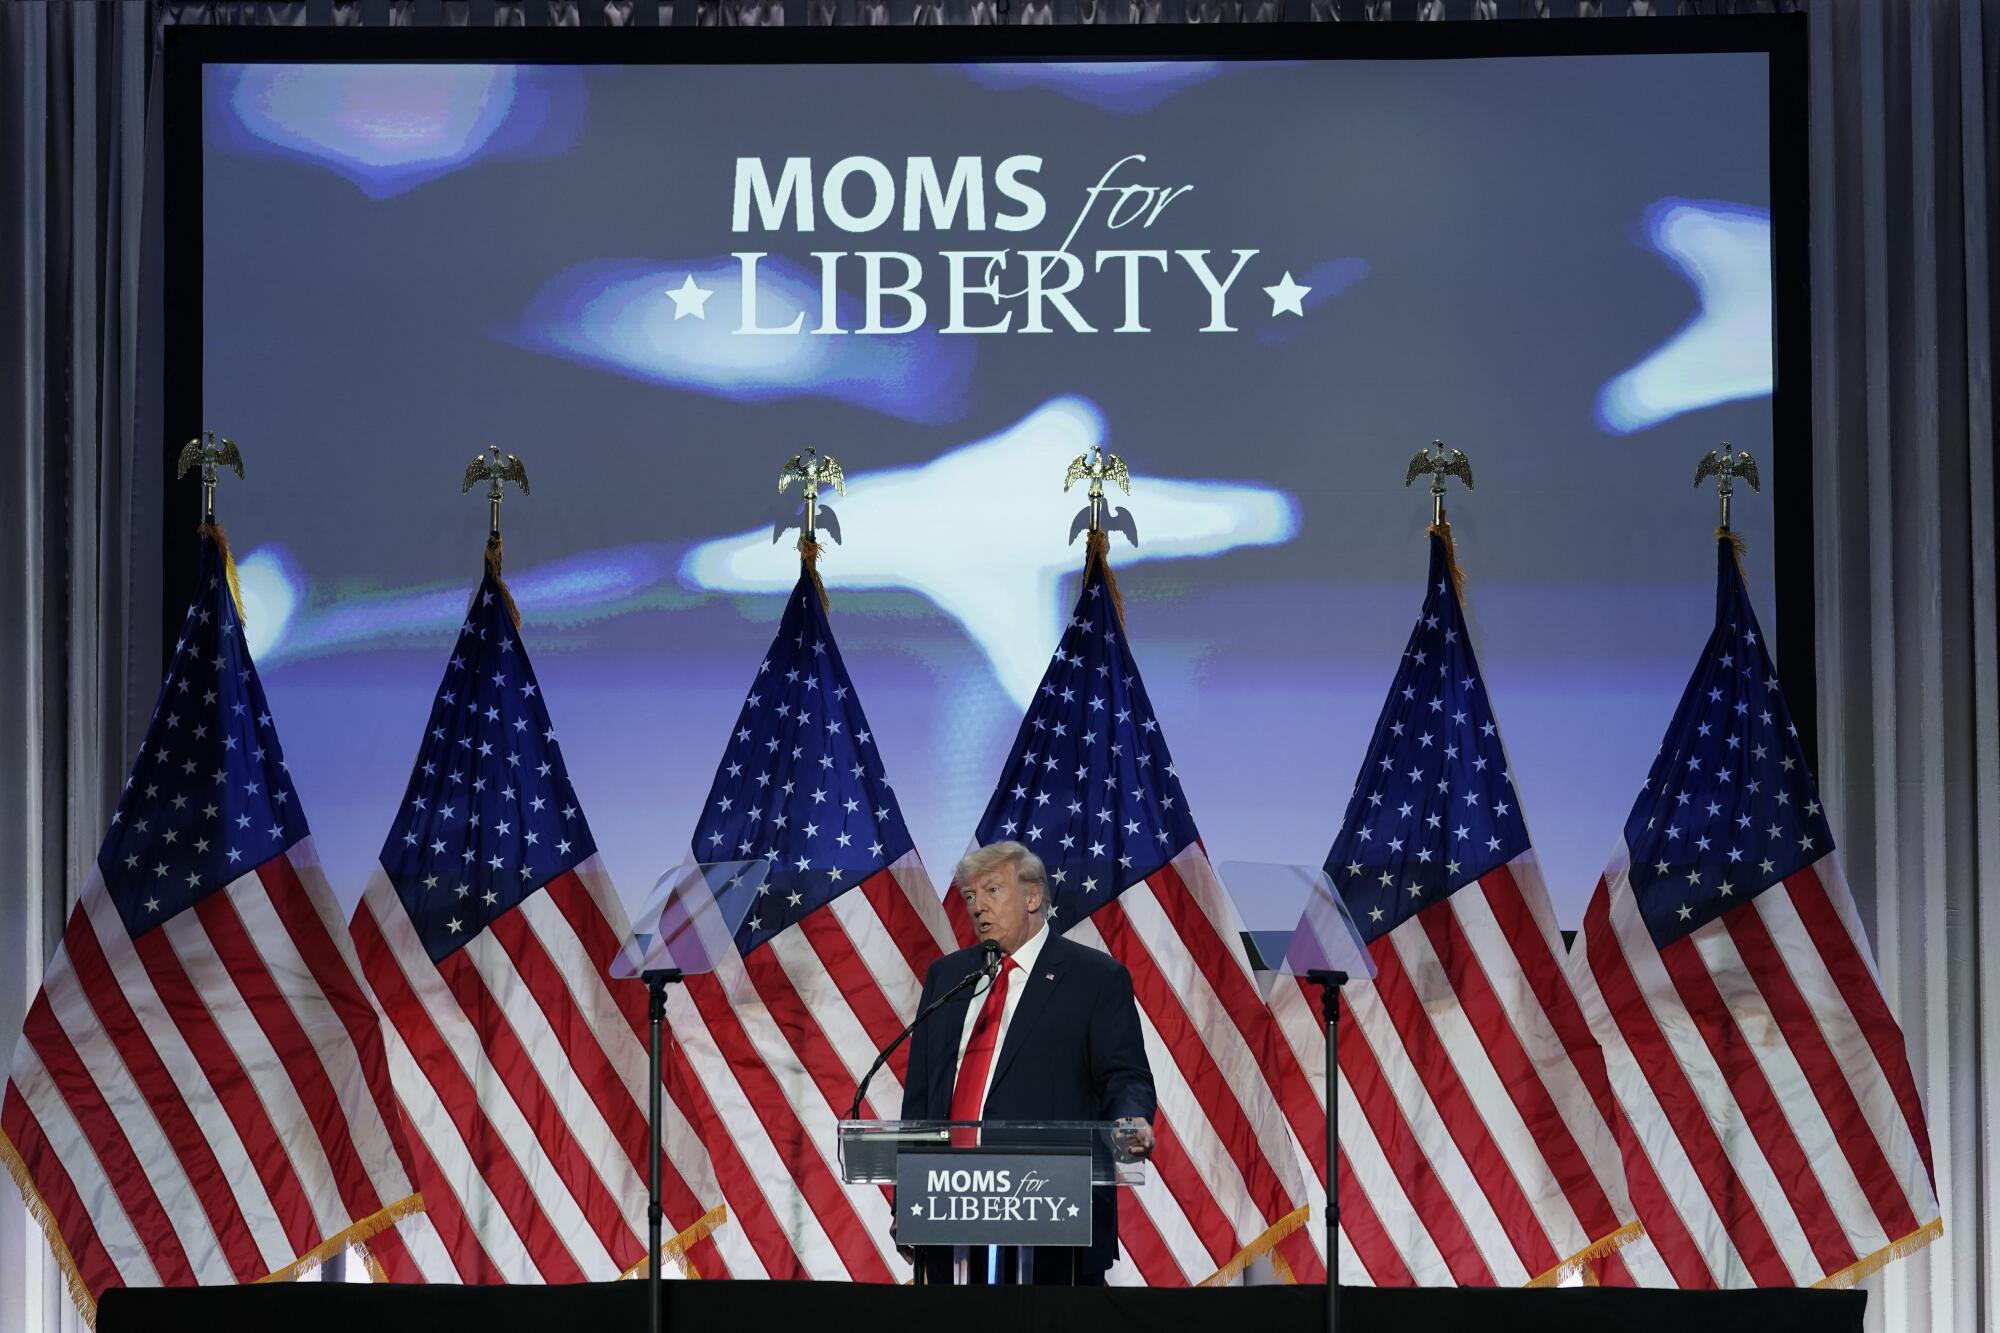 前总统唐纳德·特朗普在几面美国国旗前以“妈妈争取自由”的口号发表讲话。